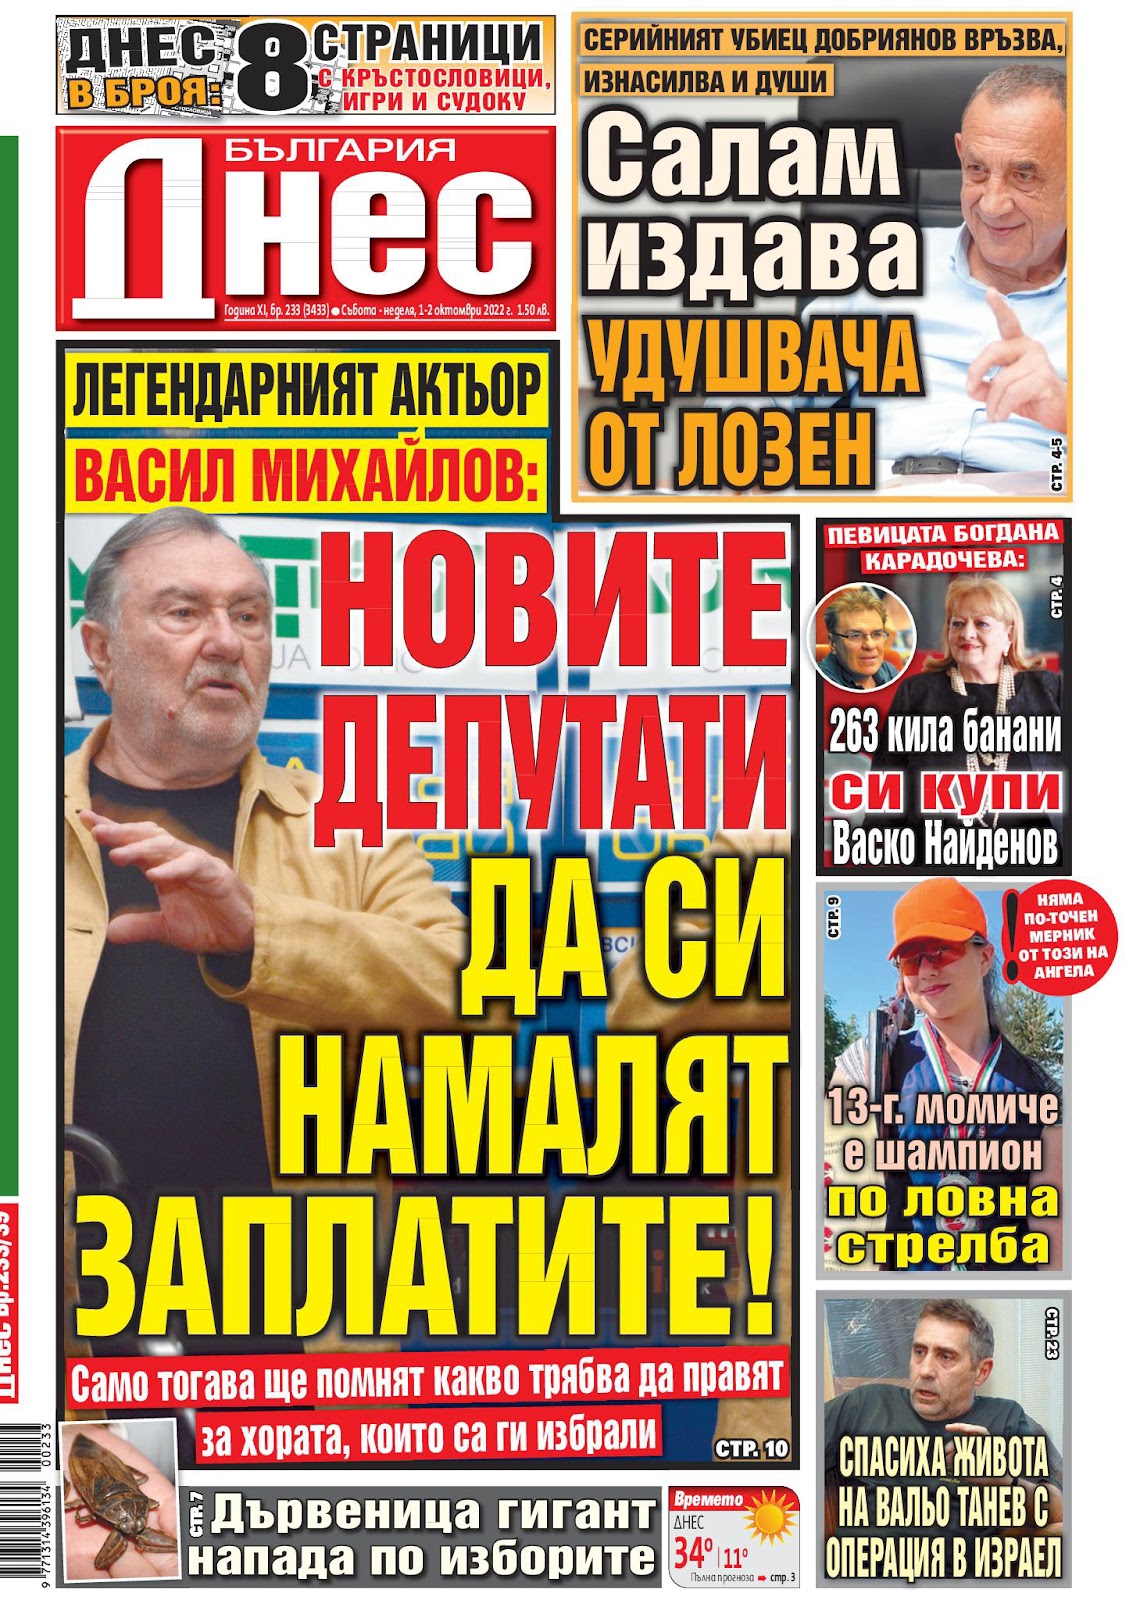 Вестници и списания: Вестник България днес – 1-2 Октомври 2022 г.